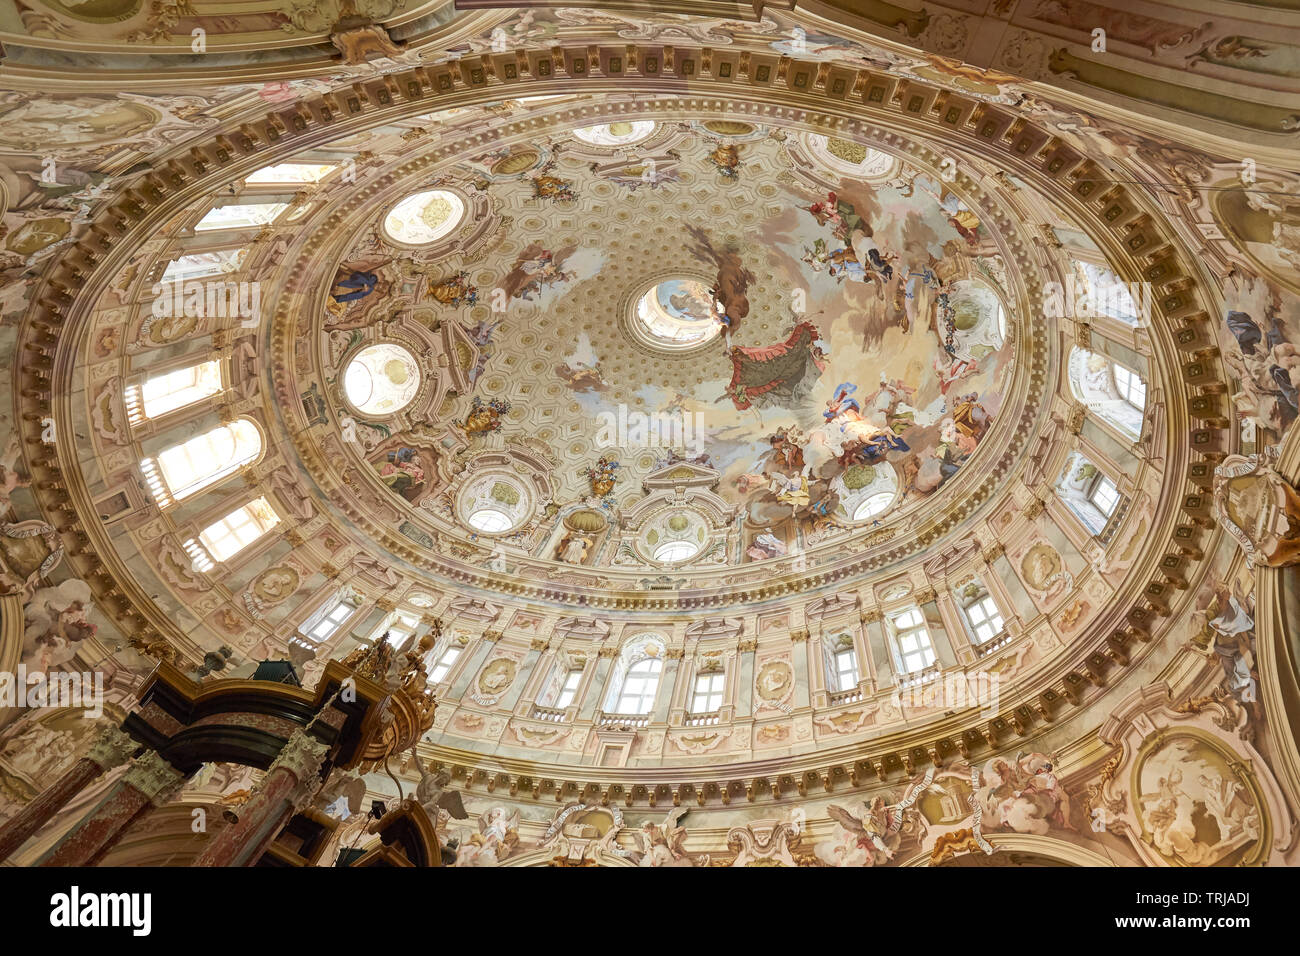 Vicoforte, Italien, 17. August 2016: Wallfahrtskirche von Vicoforte elliptische barocken Kuppel mit Fresken und Dekorationen in Piemont, Italien Stockfoto